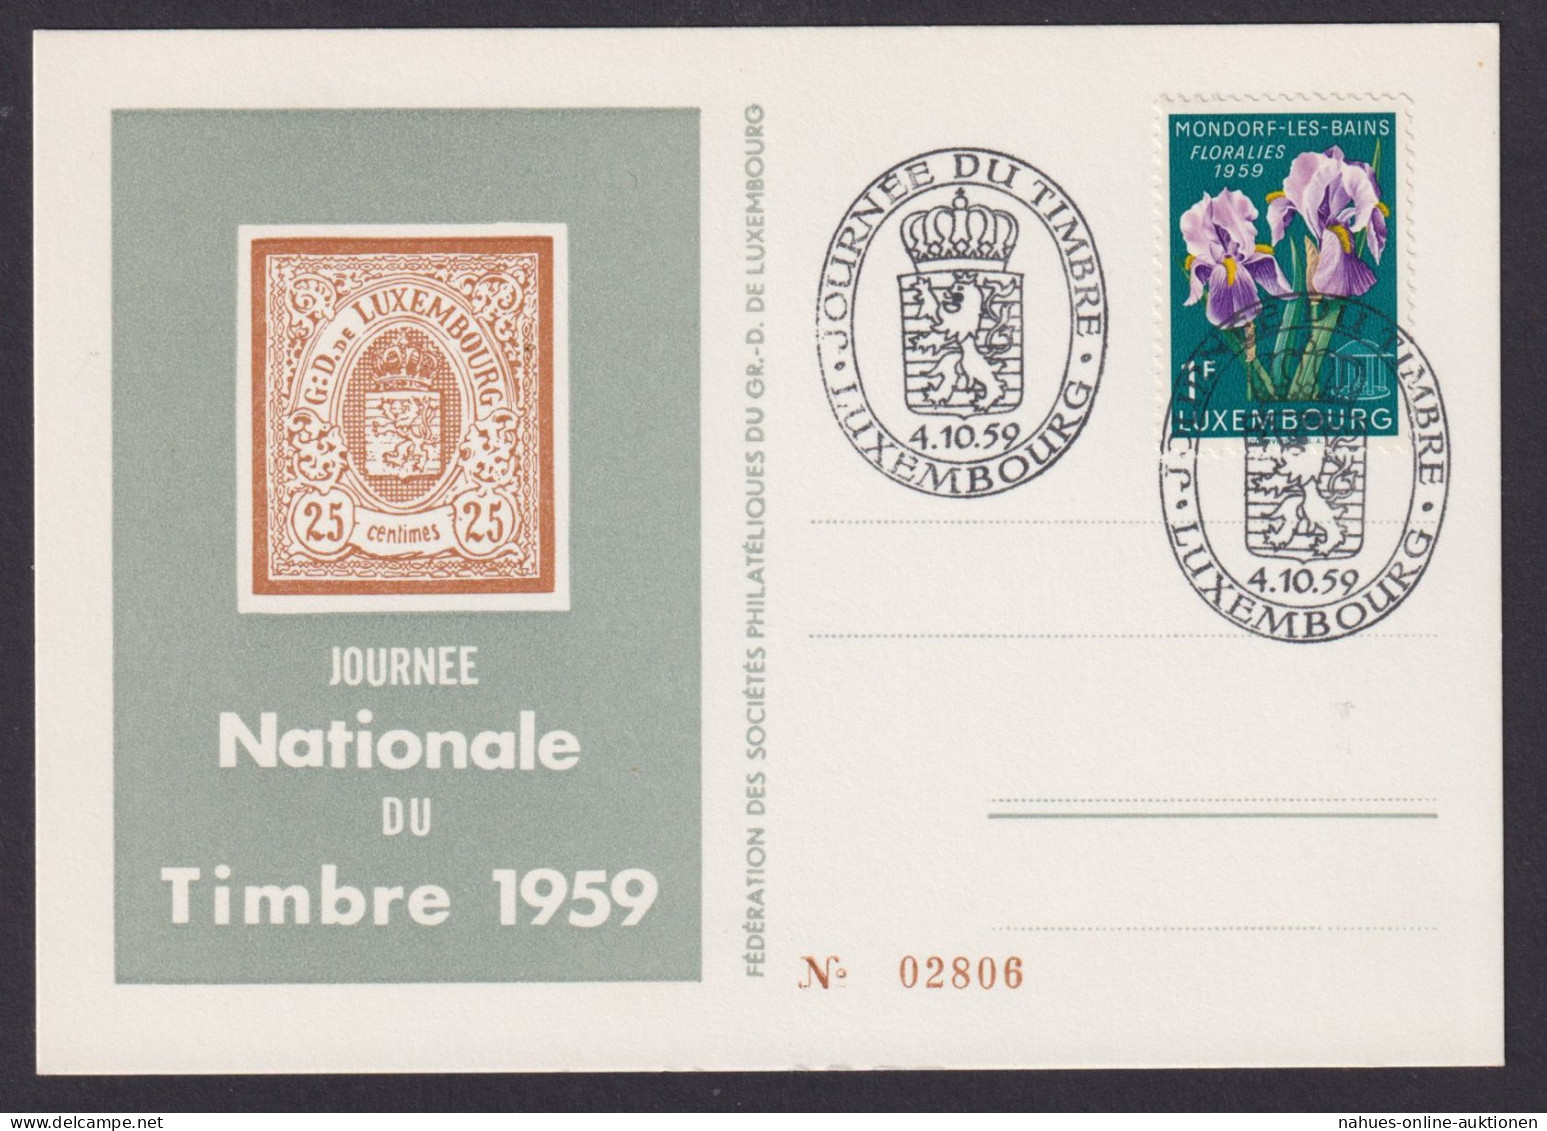 Europa Luxemburg Philatelie Briefmarken Ausstellung 1959 Nummerierte Sonderkarte - Lettres & Documents